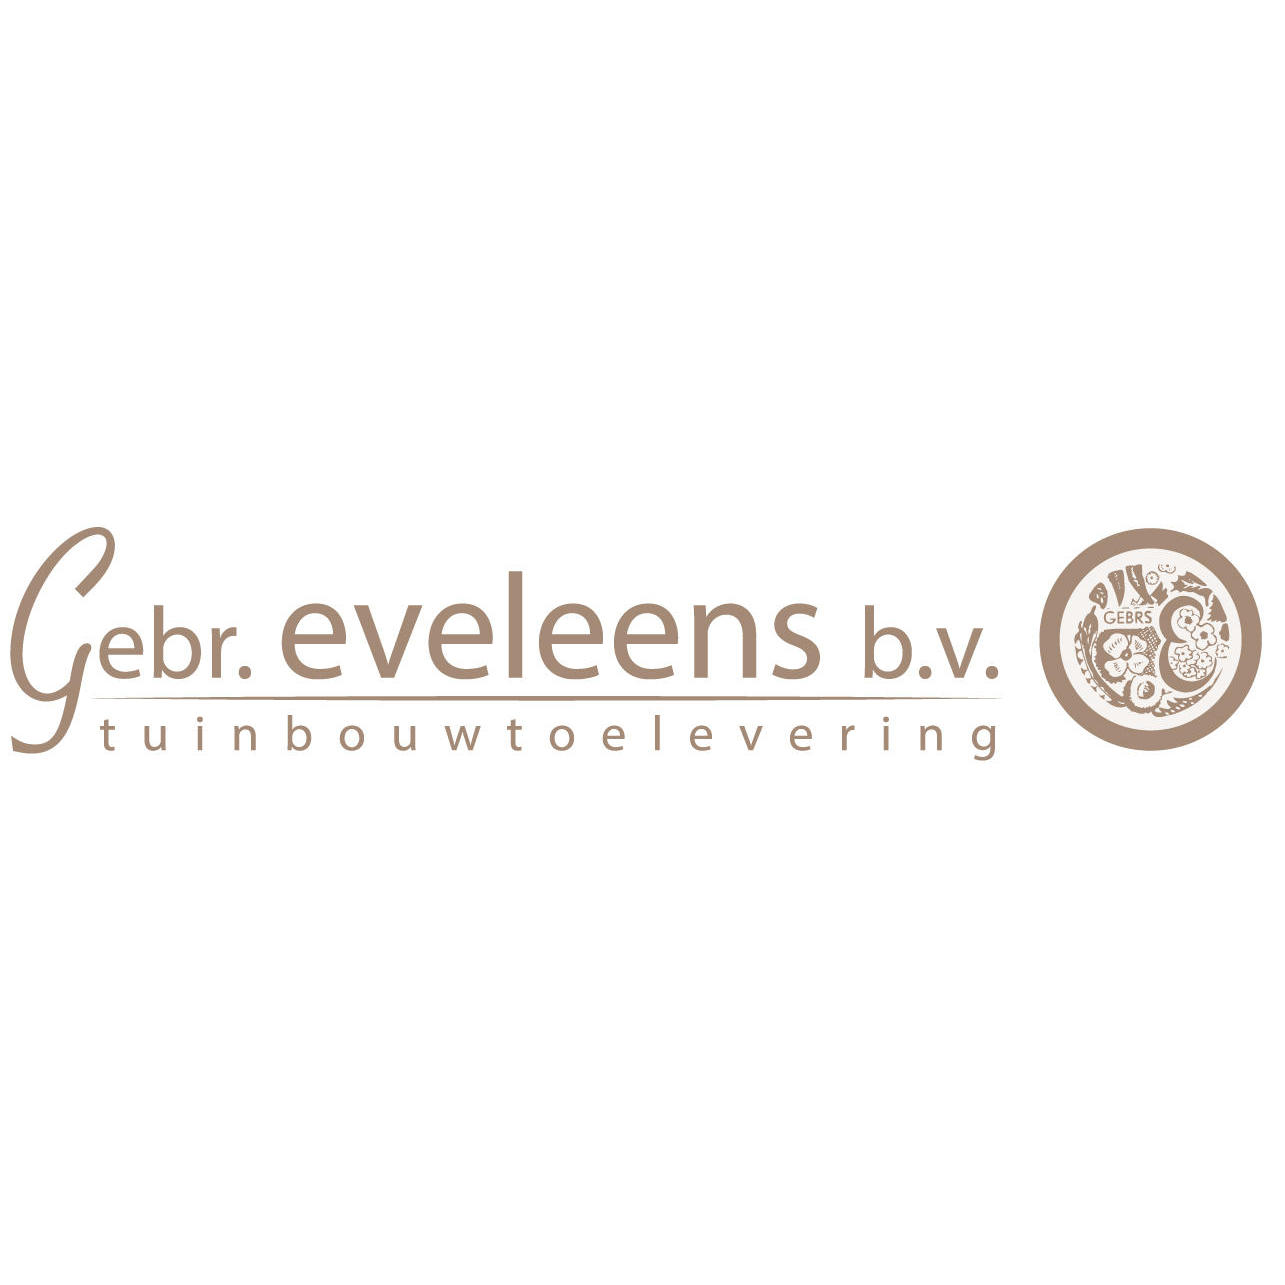 Gebroeders Eveleens BV Logo